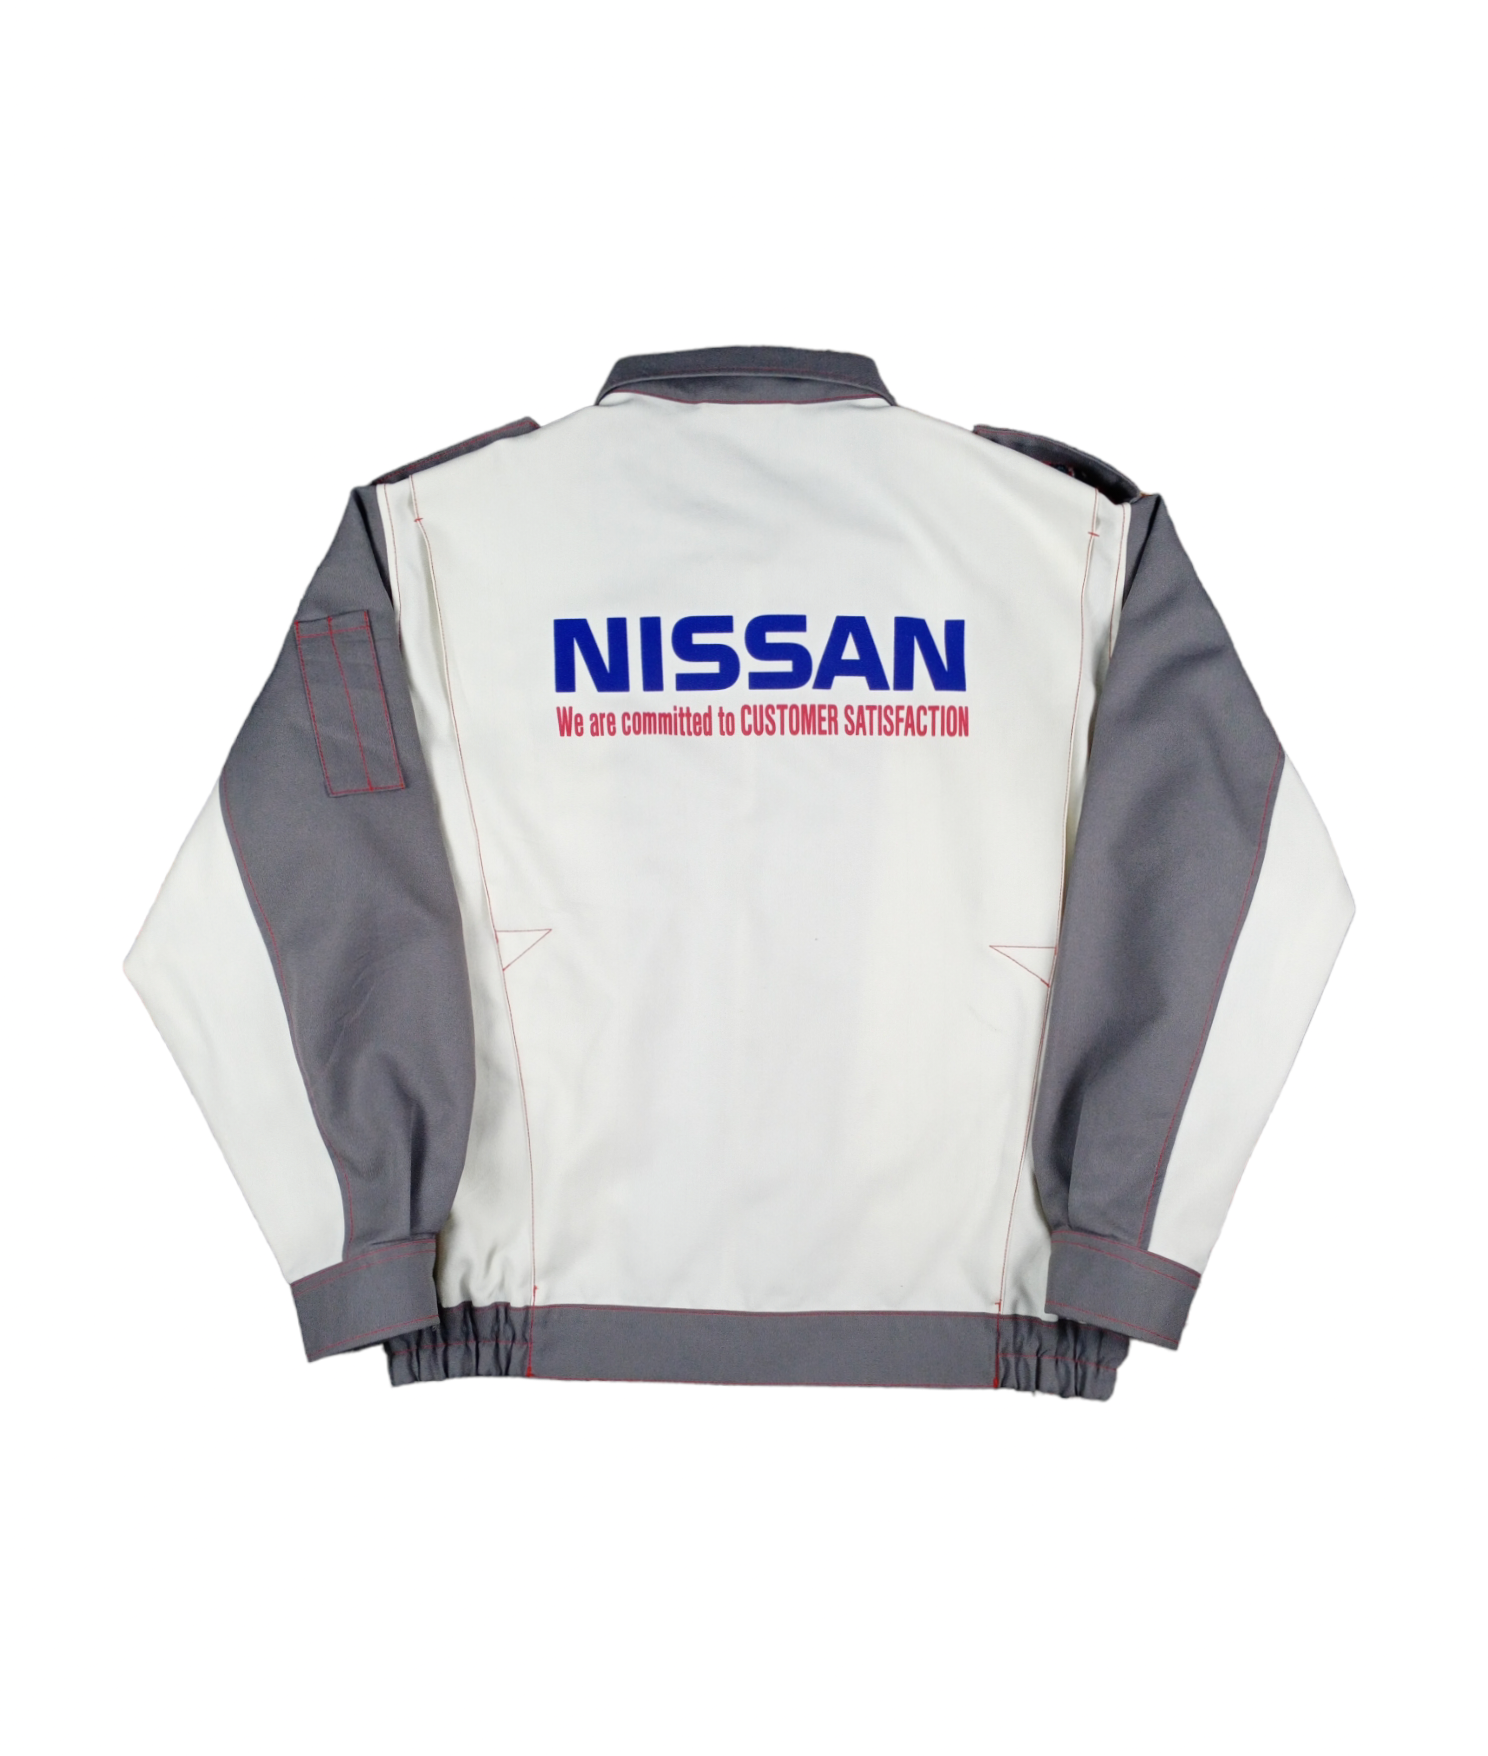 Sports Specialties - ?RARE?Vintage Nissan Worker Uniform Jacket